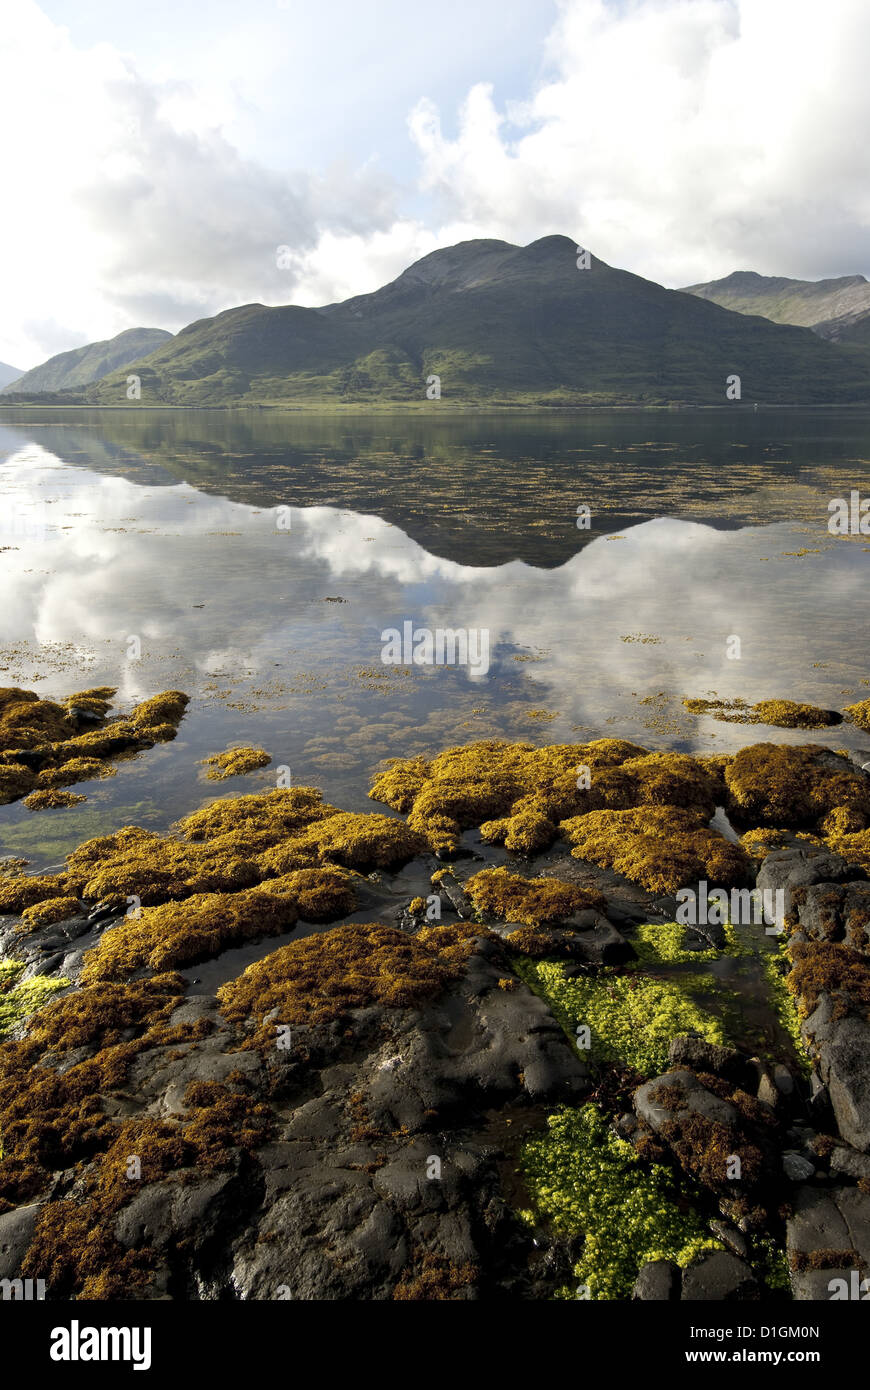 Paysage sur l'île de Mull, Hébrides intérieures, Ecosse, Royaume-Uni, Europe Banque D'Images